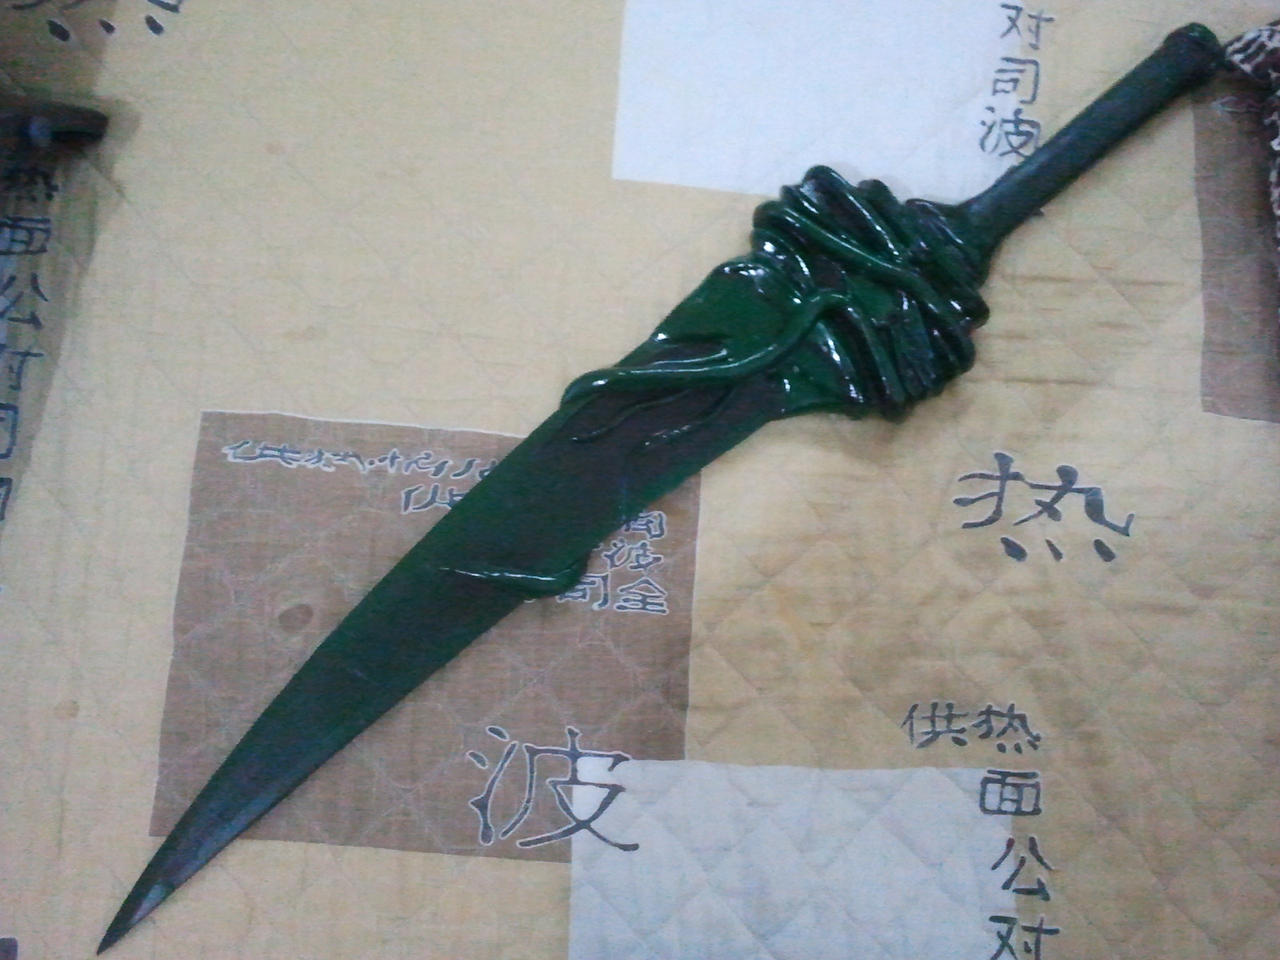 Miraak's Sword